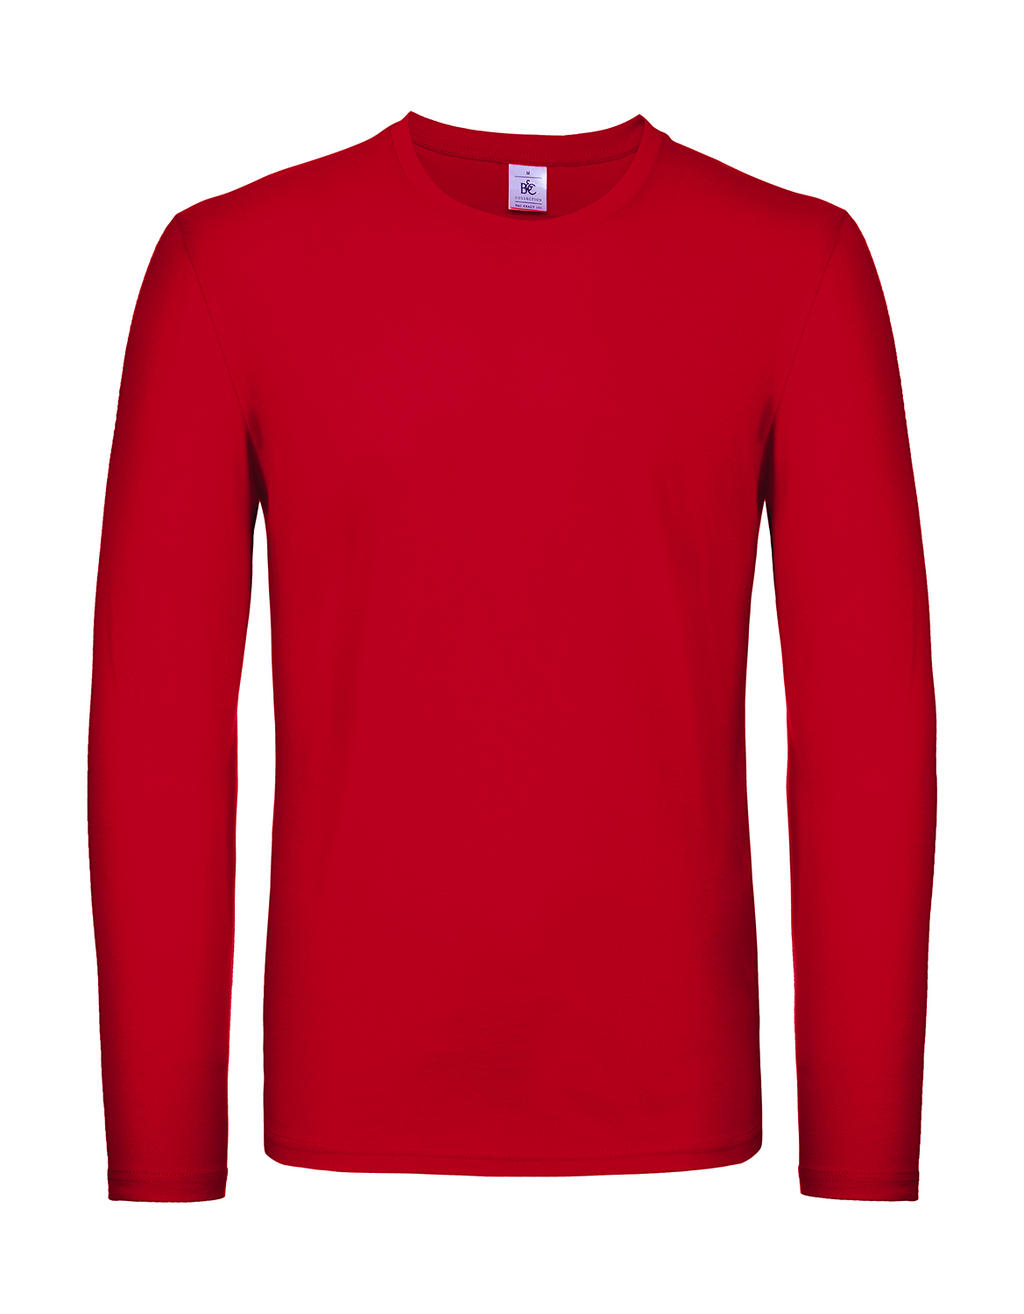 Tričko s dlhými rukávmi #E150 - red